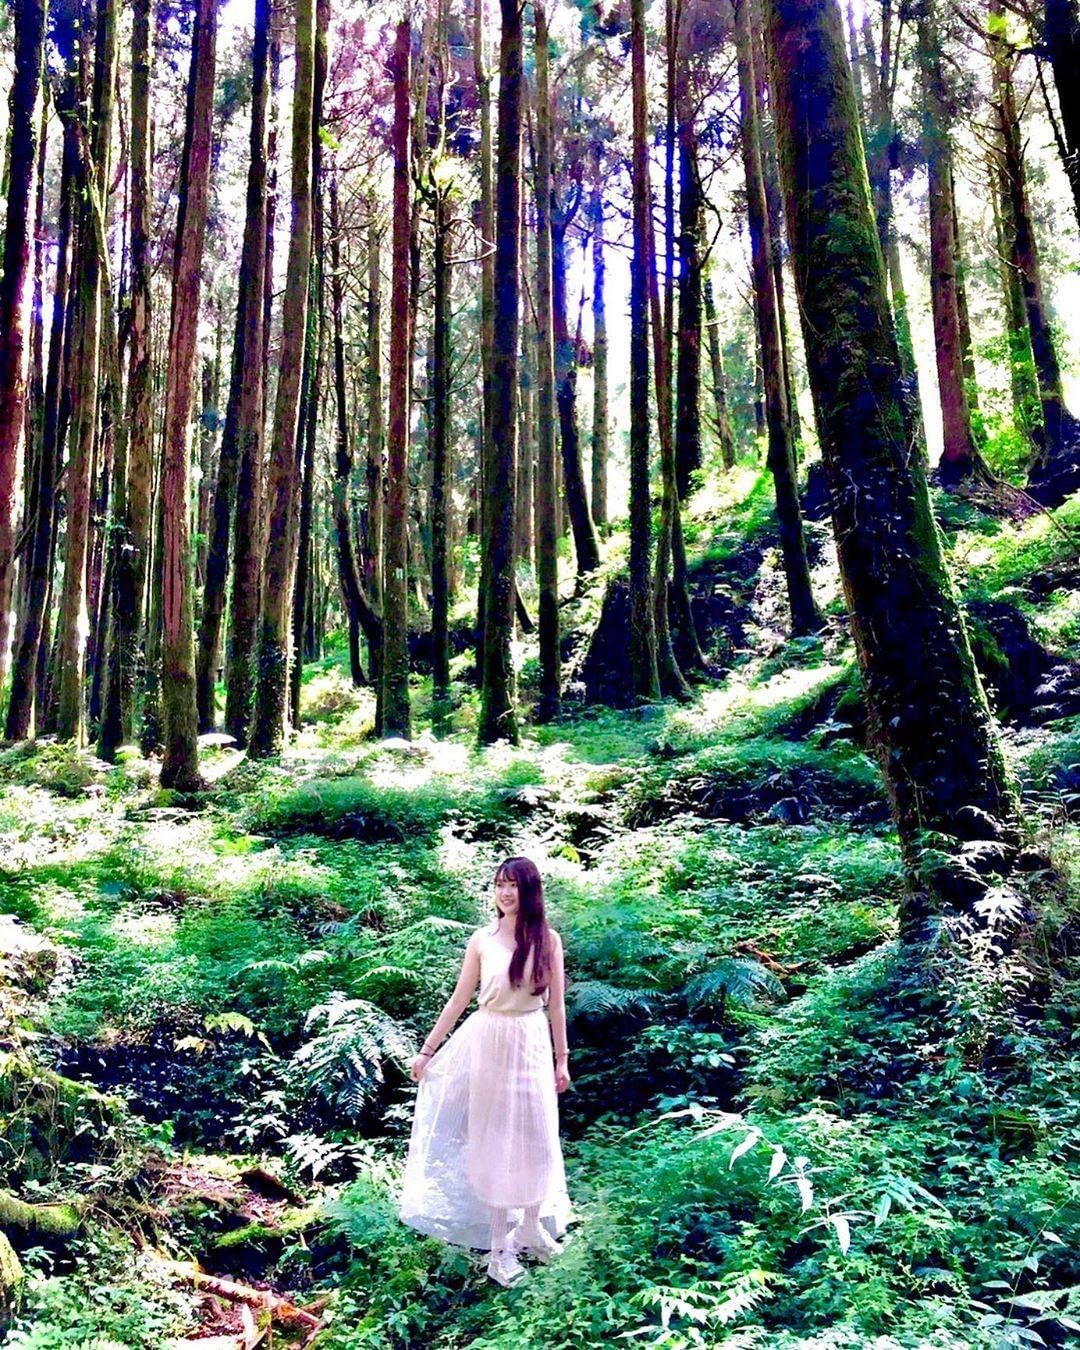 阿里山仙子+森林美景在這裡待一整天都不覺得膩-⠀⠀⠀⠀⠀⠀⠀⠀⠀⠀⠀感謝 @venus10358 分享的美照-⠀⠀⠀⠀⠀⠀⠀⠀⠀⠀...